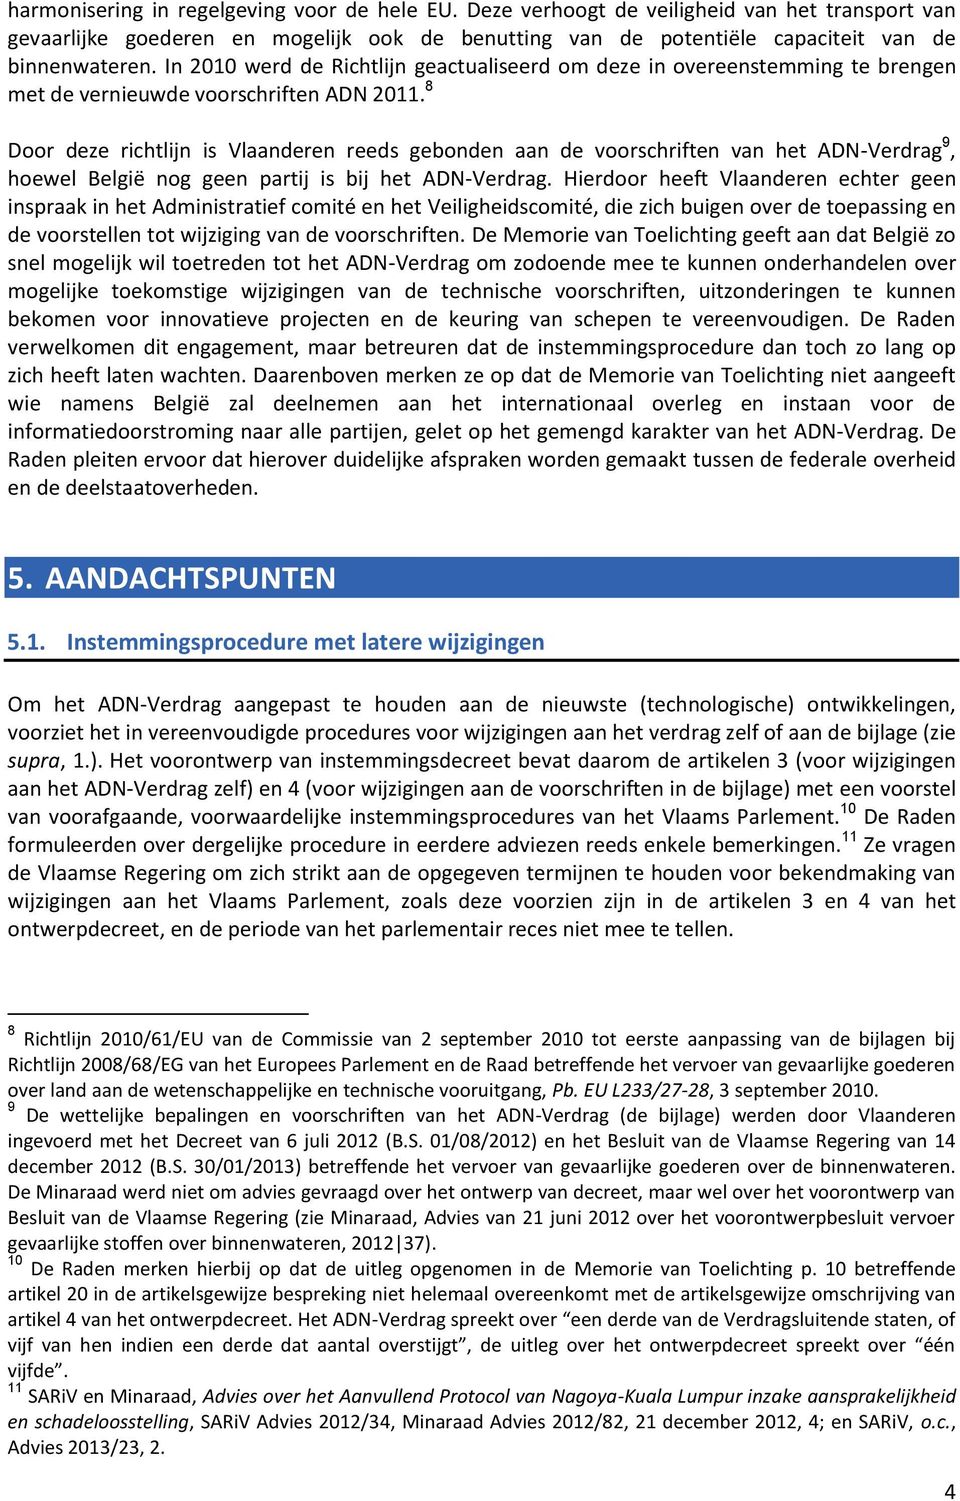 8 Door deze richtlijn is Vlaanderen reeds gebonden aan de voorschriften van het ADN-Verdrag 9, hoewel België nog geen partij is bij het ADN-Verdrag.